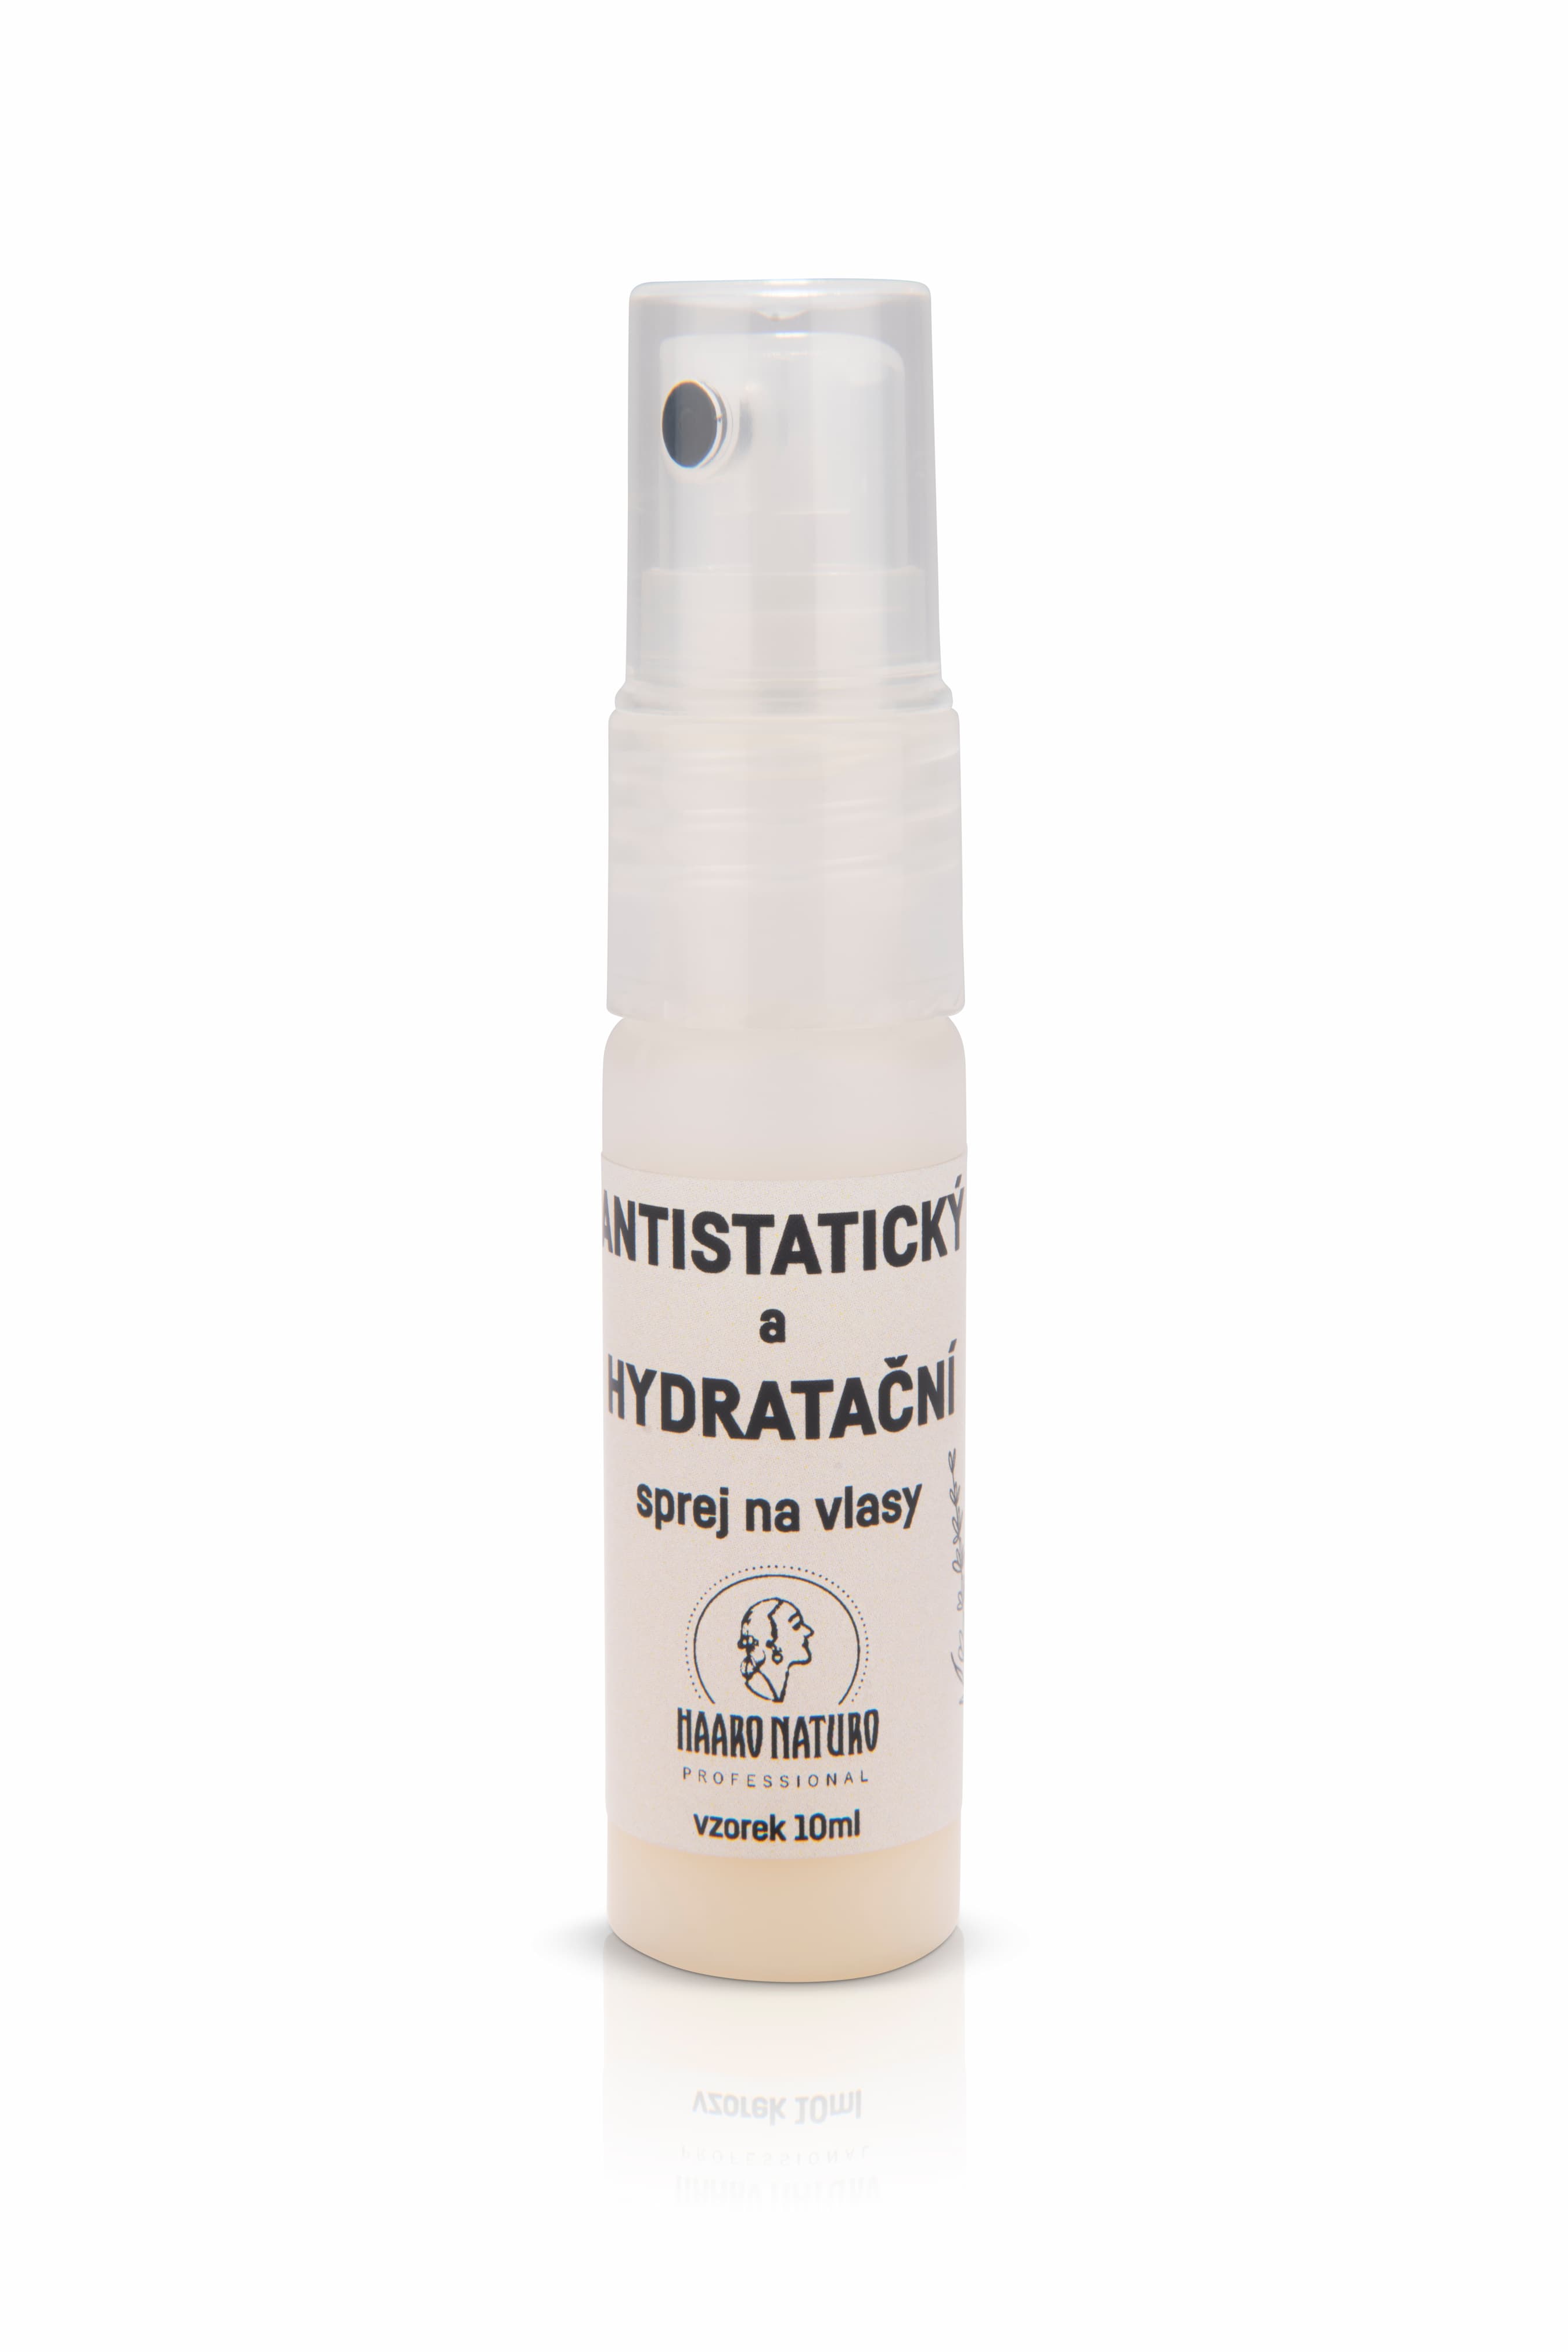 Haaro Naturo Antistatický a hydratační sprej na vlasy - 10 ml (vzorek)